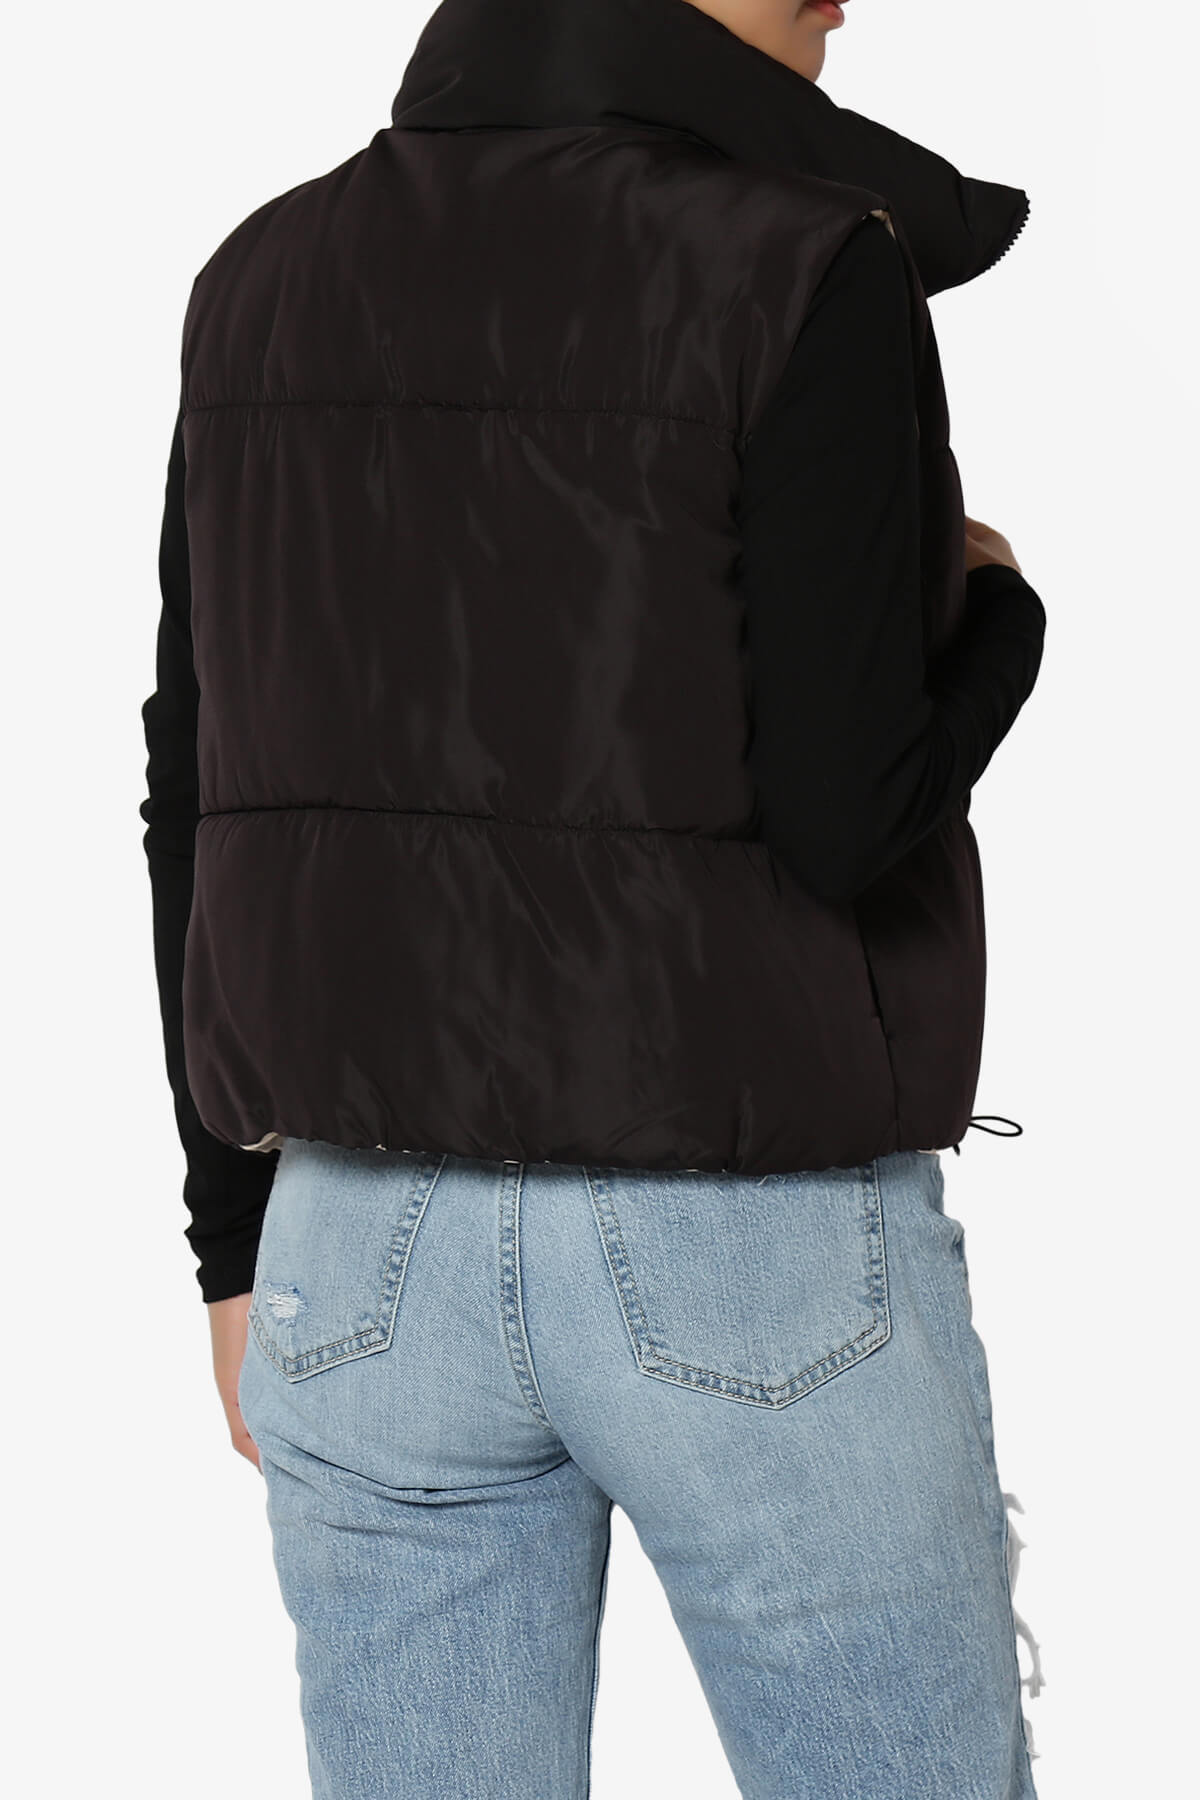 Legaci Reversible Puffer Vest BLACK AND TAN_2